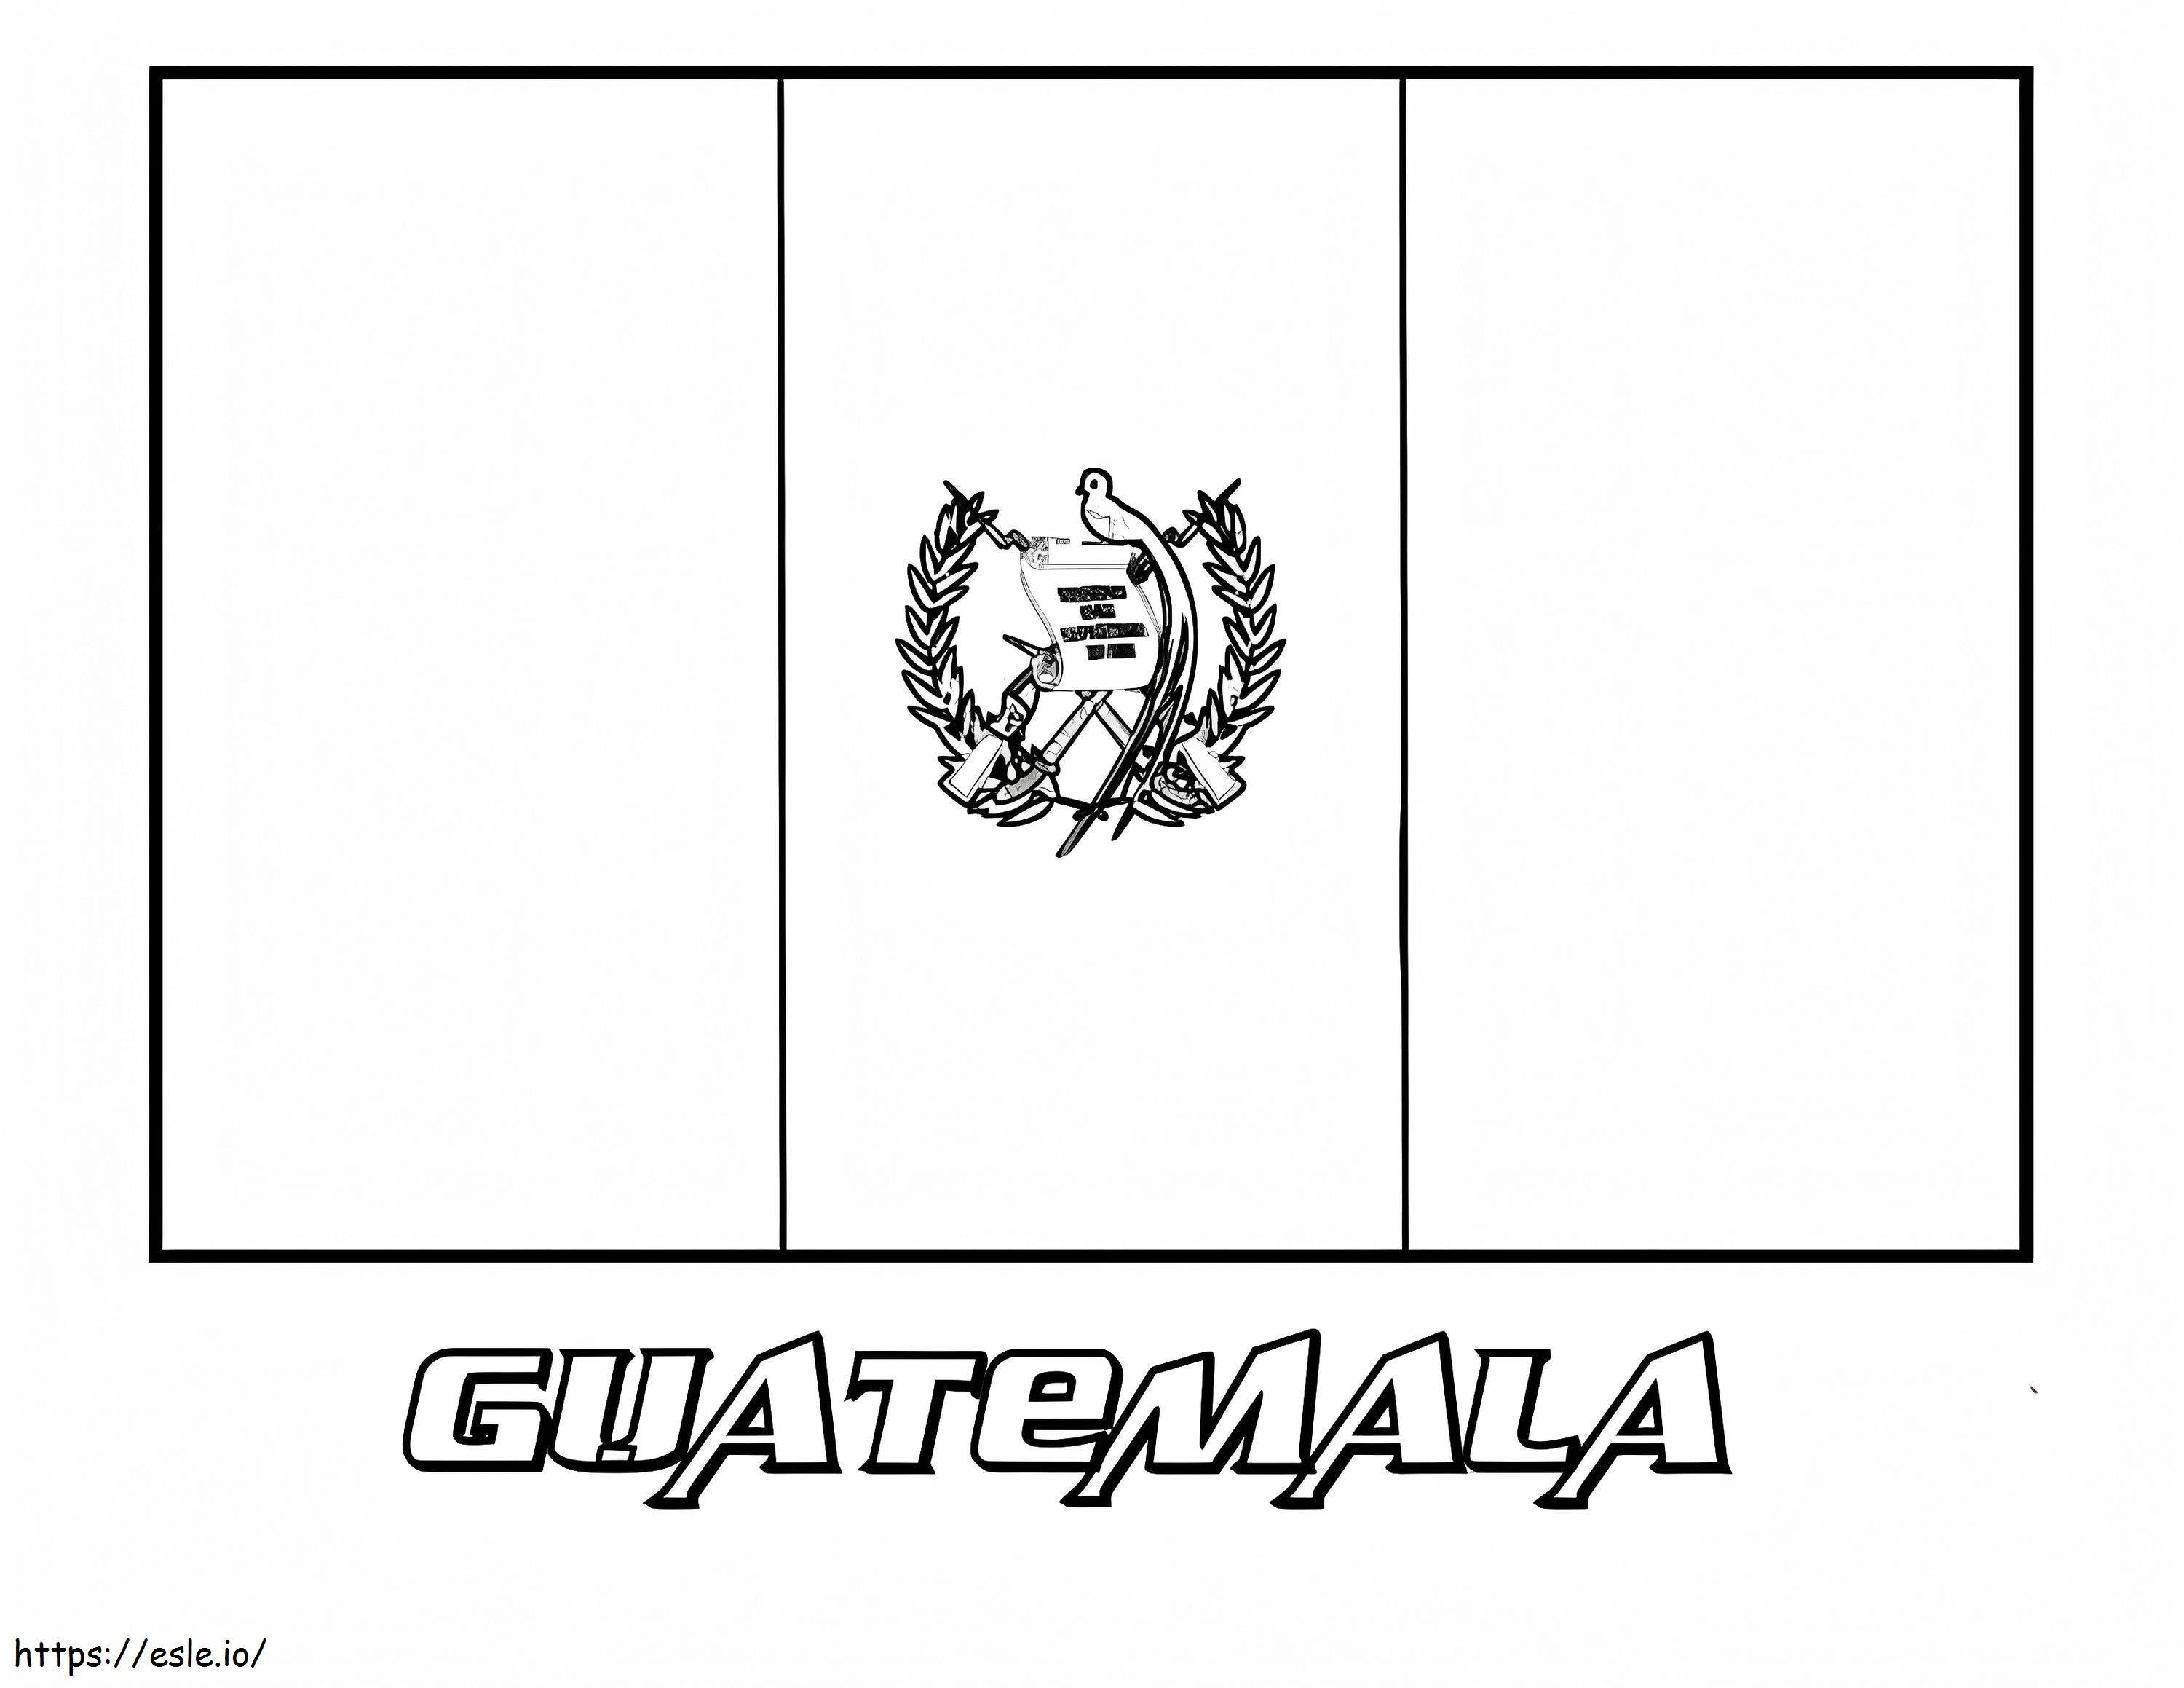 Bandeira da Guatemala para colorir